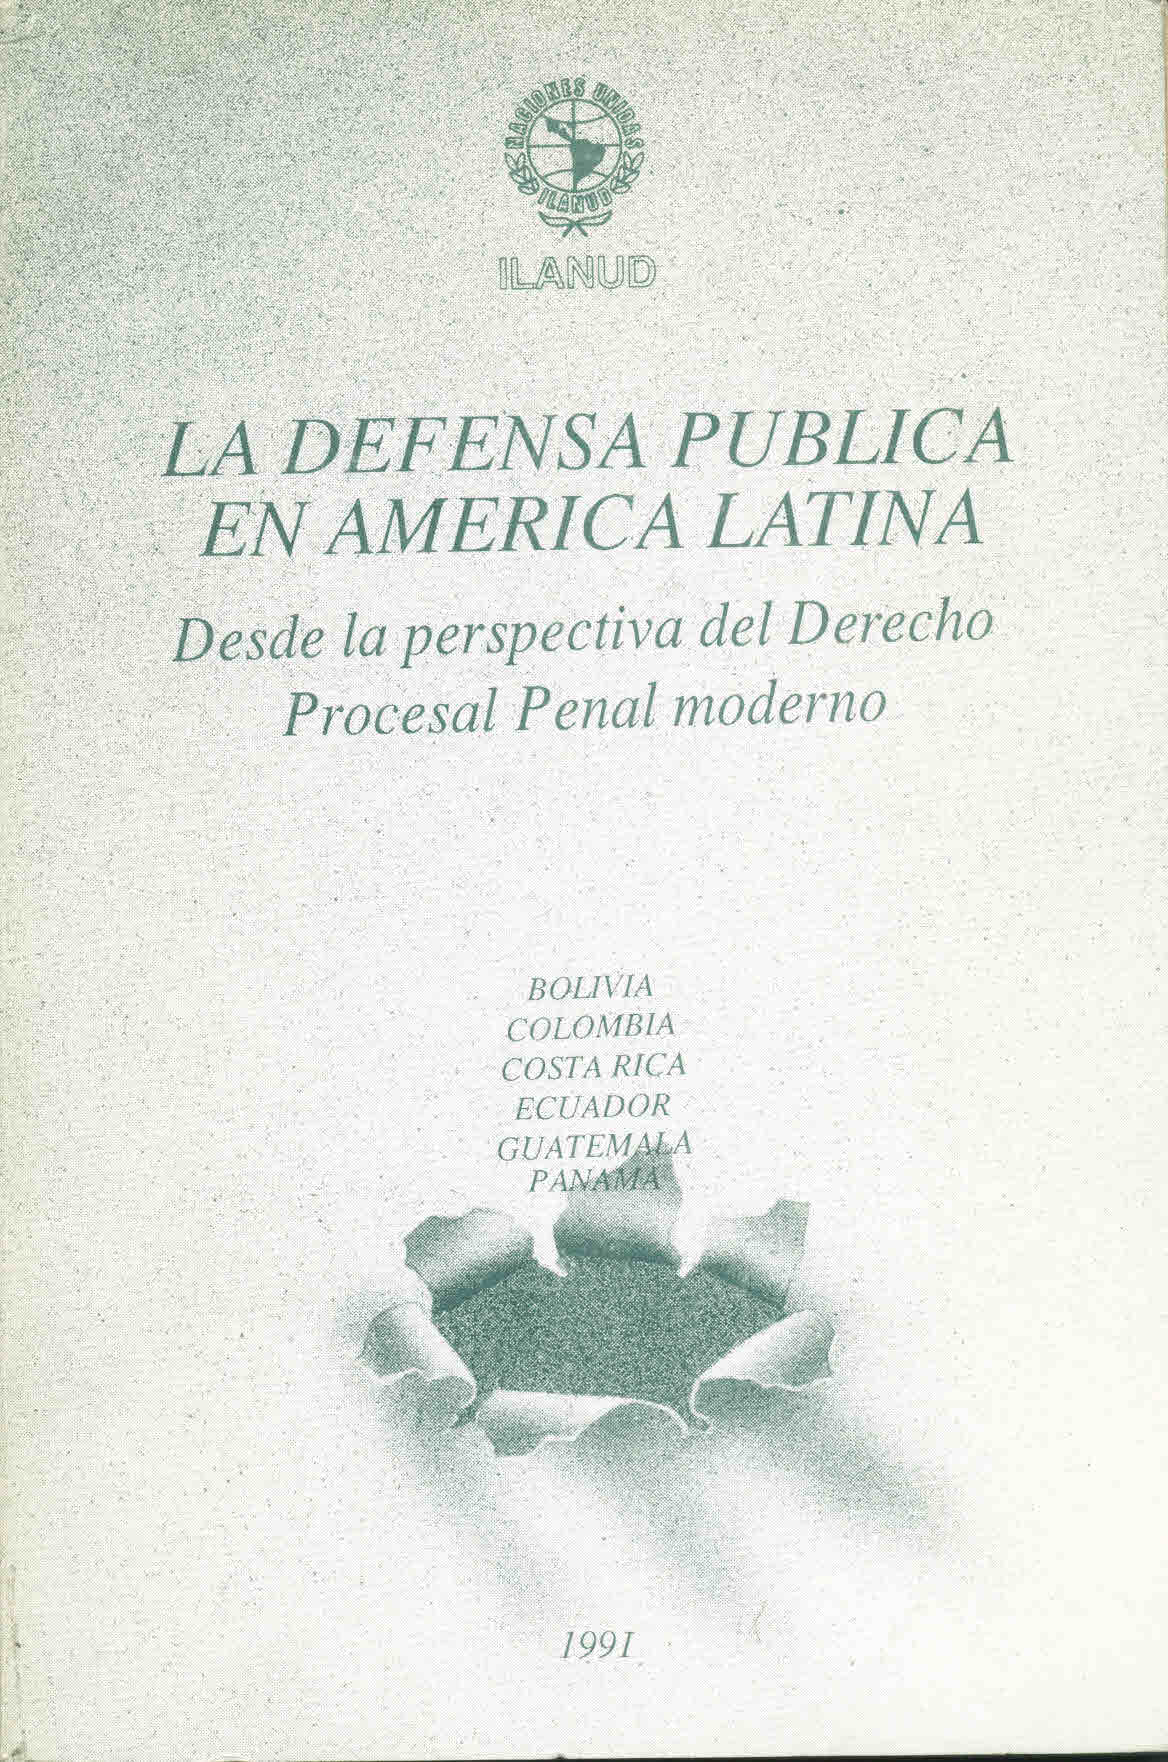 La defensa pública en América latina desde la perspectiva del derecho procesal penal moderno